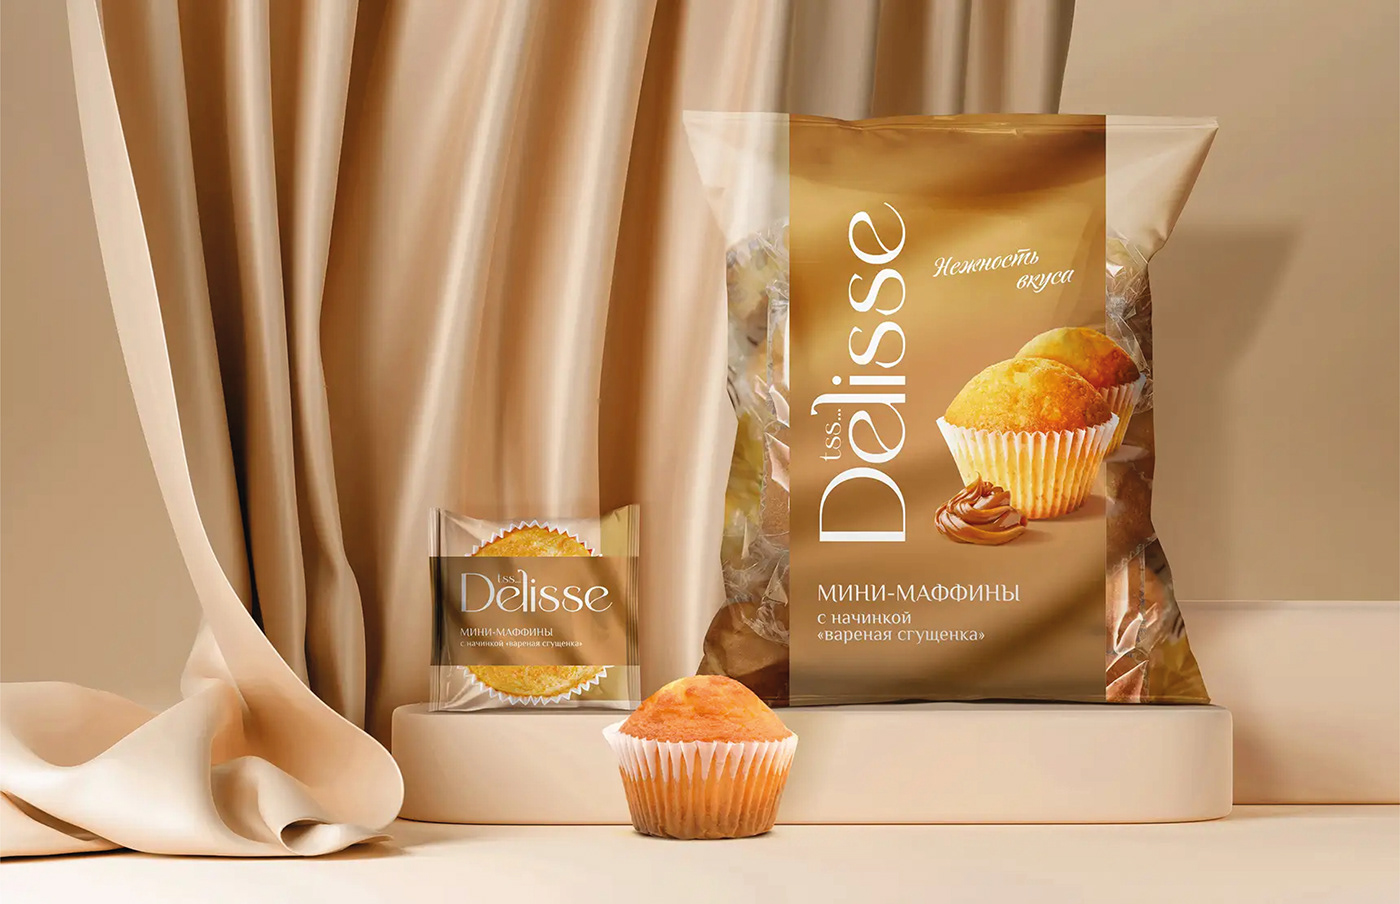 Food  market shop Grocery sweet branding  brand identity Packaging package design  packagingdesign